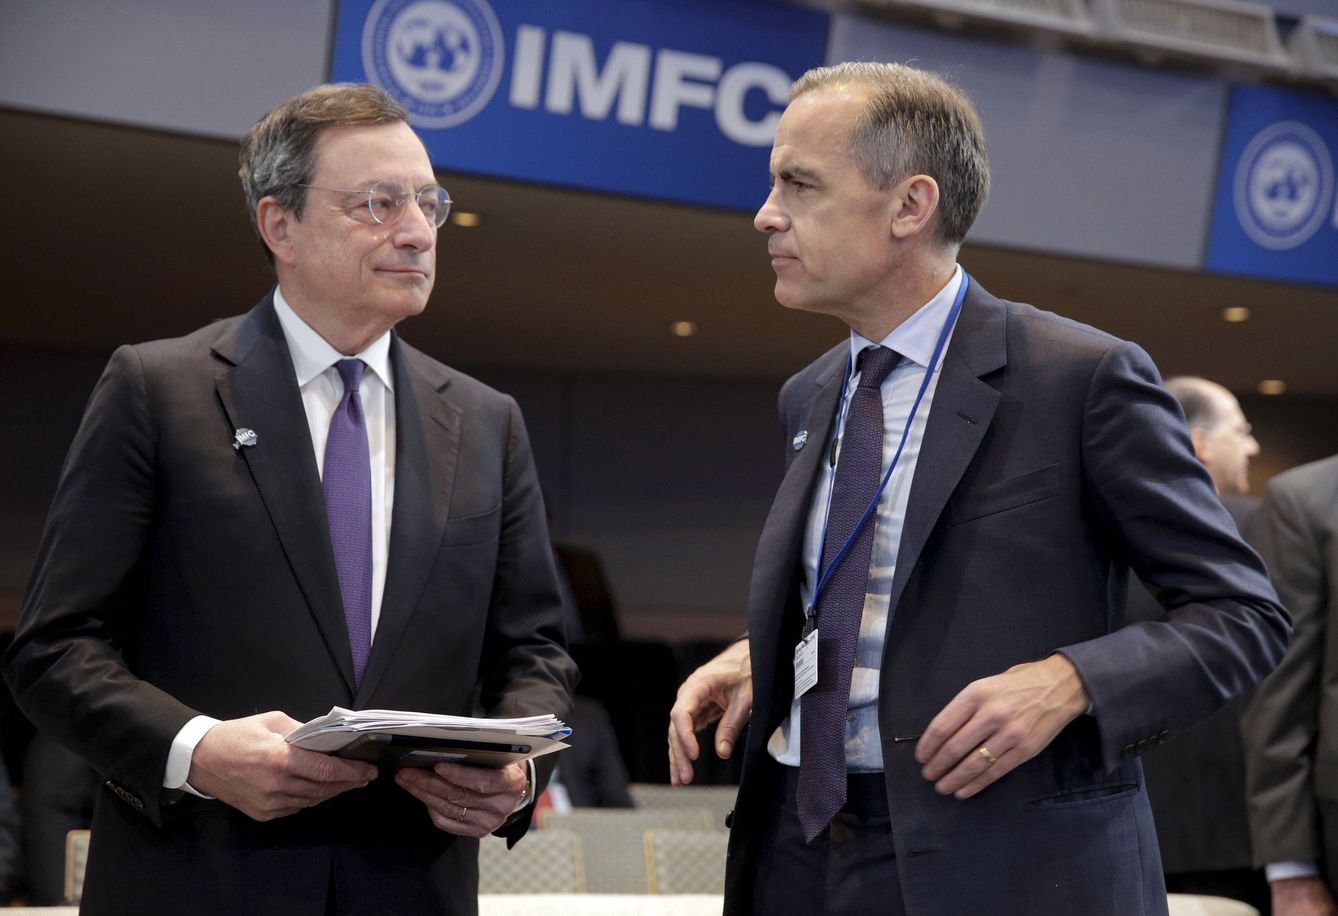 Mario Draghi (BCE) y Mark Carney (BoE) sacan la artillería contra el Brexit